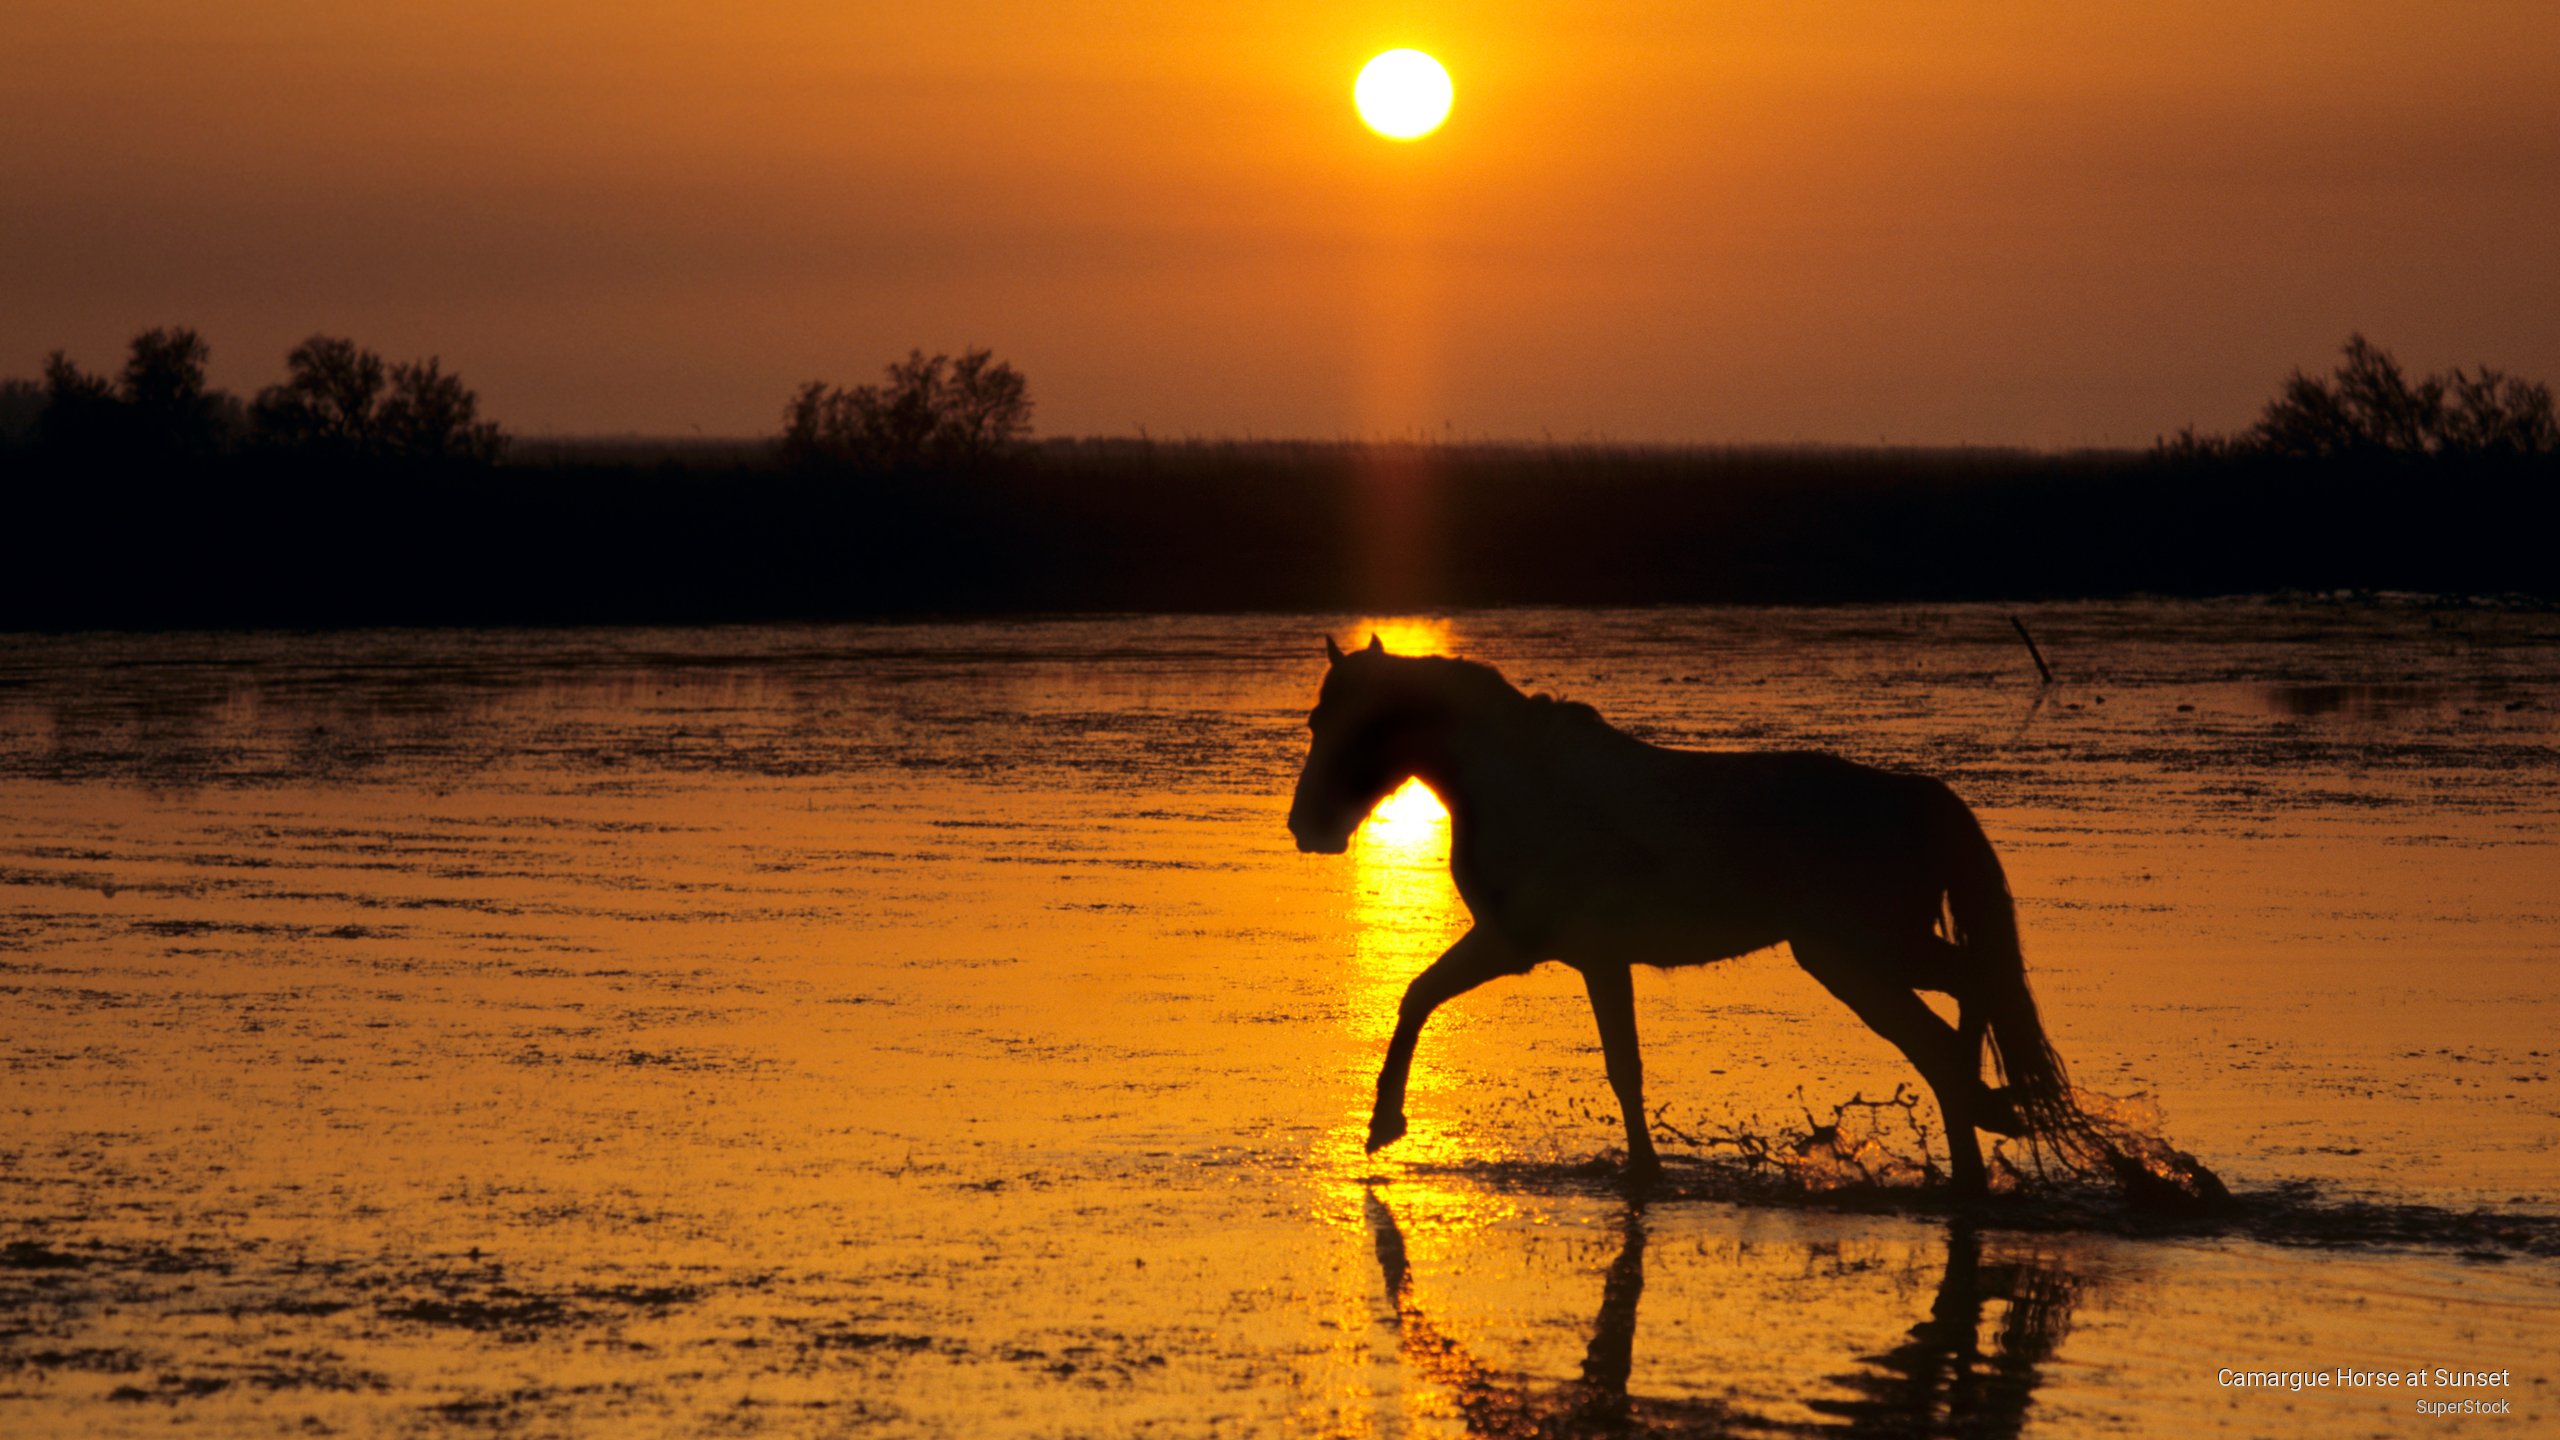 🔥 [52+] Horses at Sunset Wallpapers | WallpaperSafari